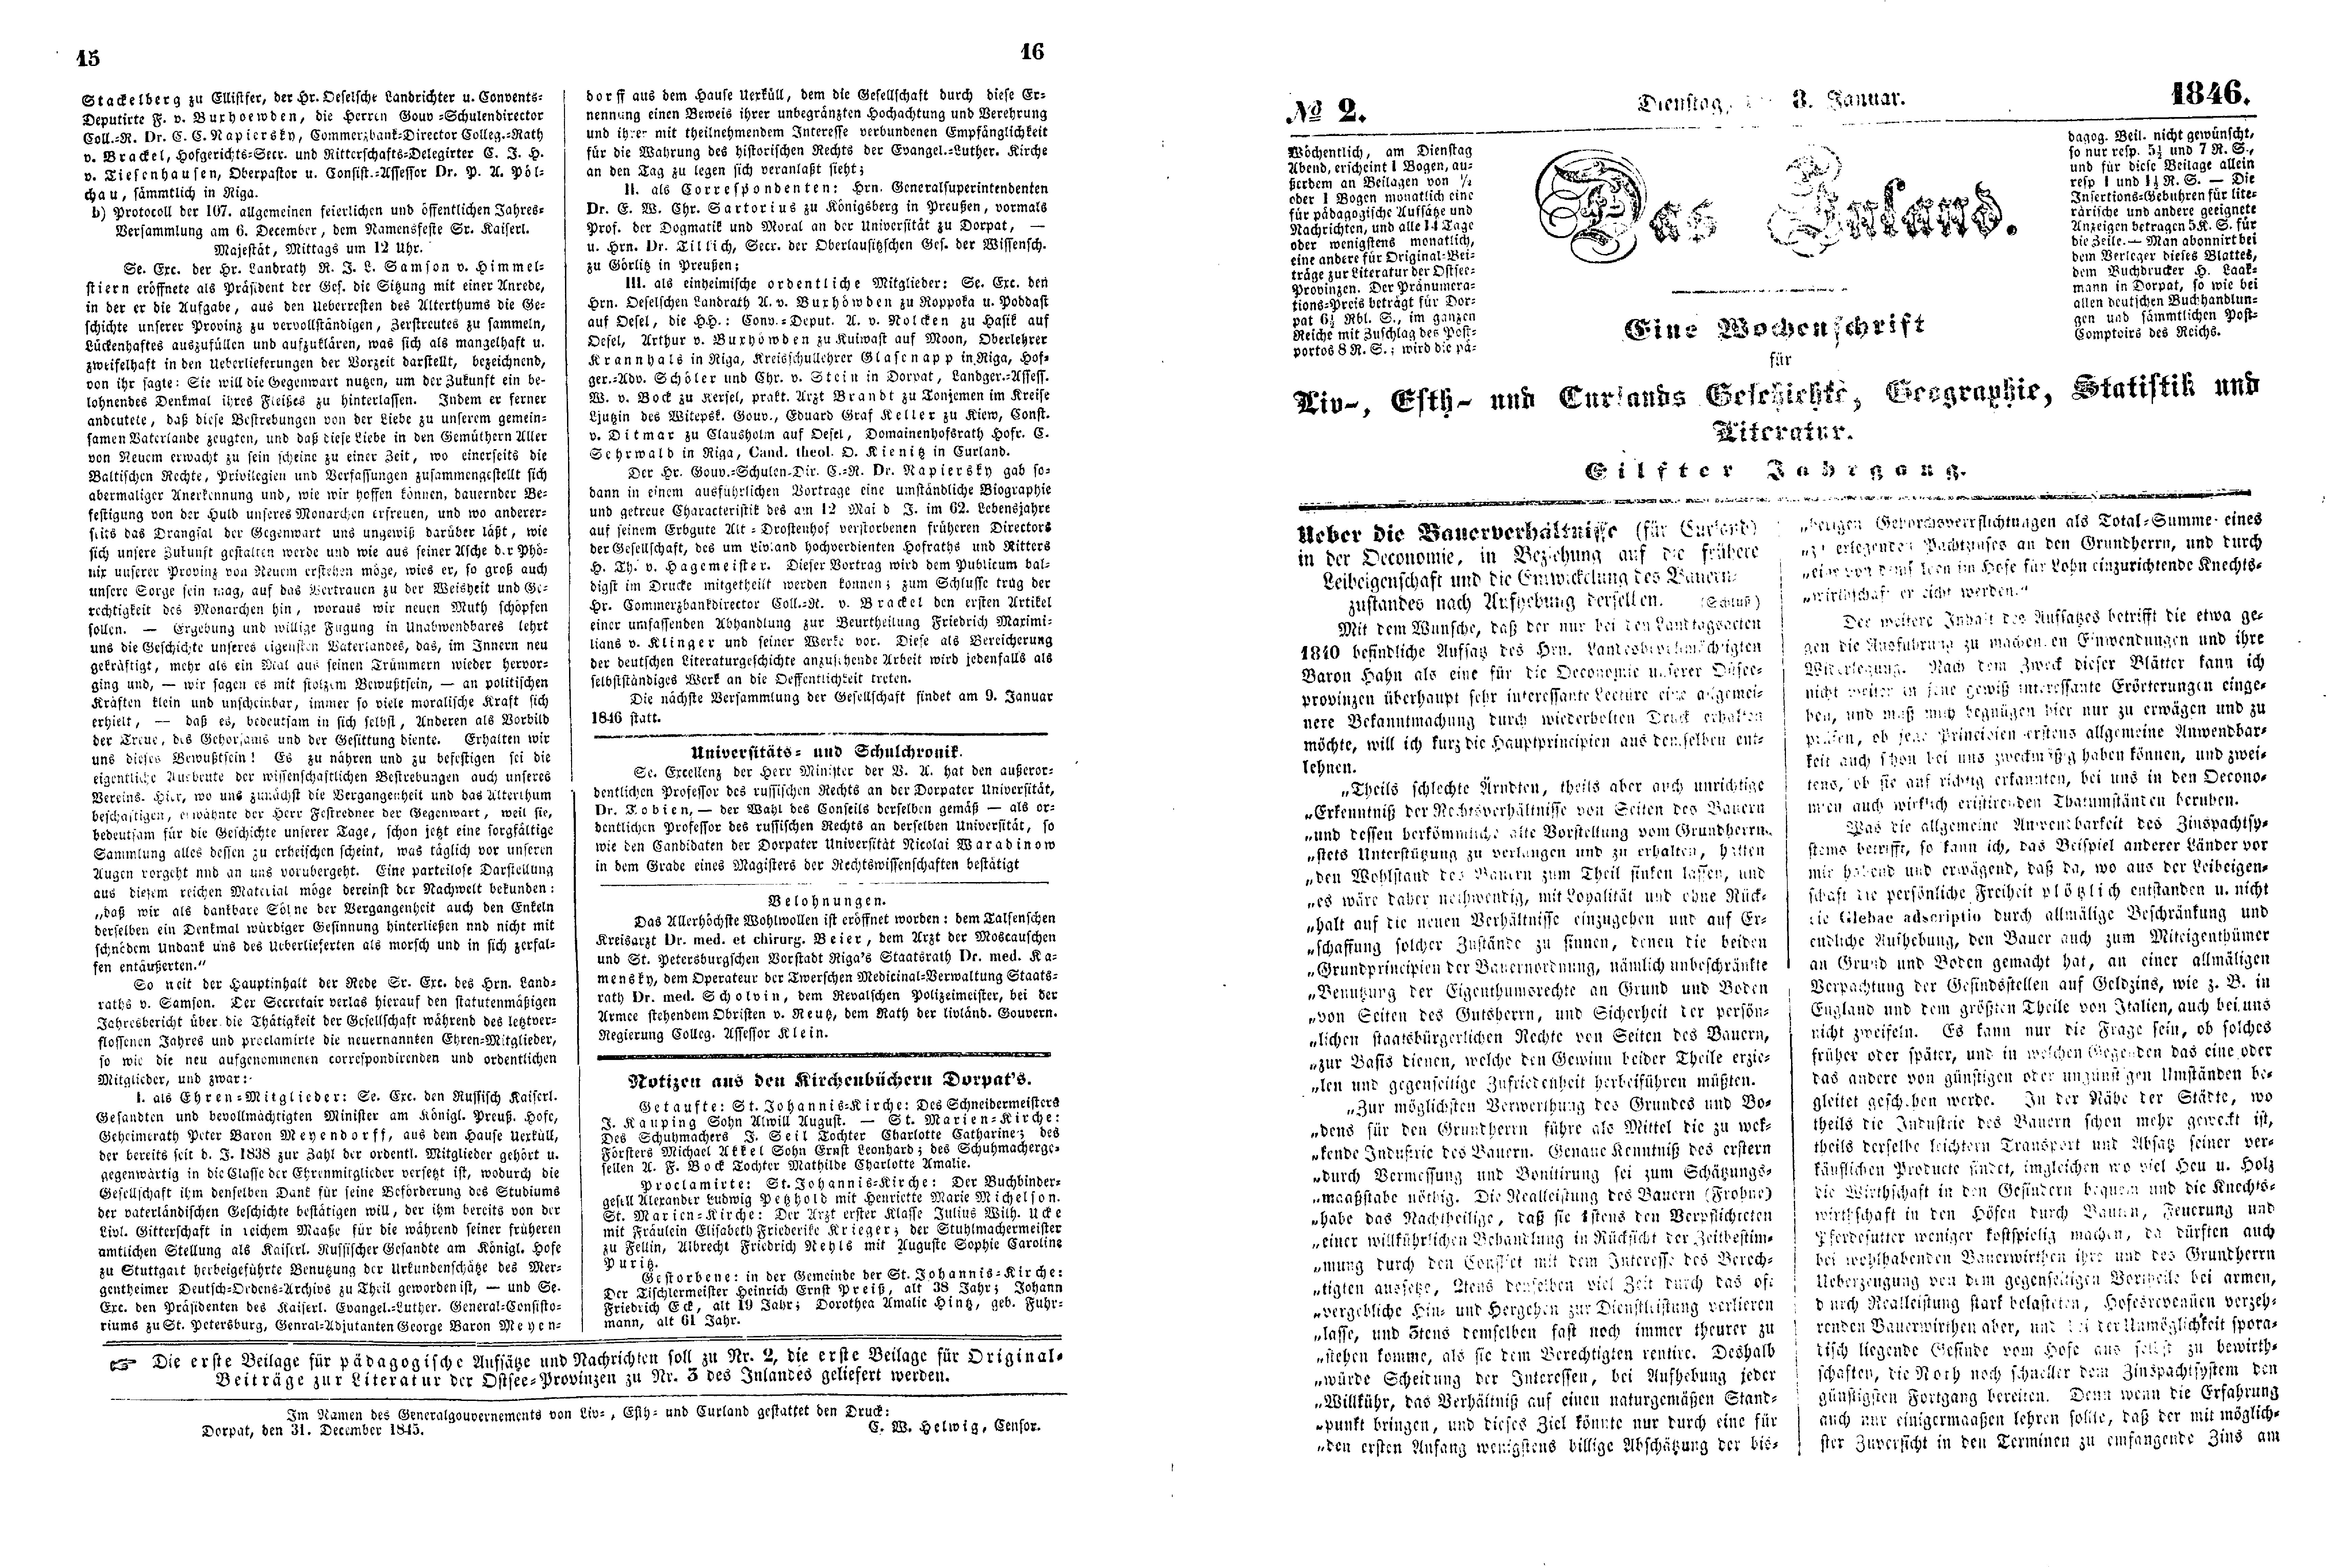 Das Inland [11] (1846) | 9. (15-18) Основной текст